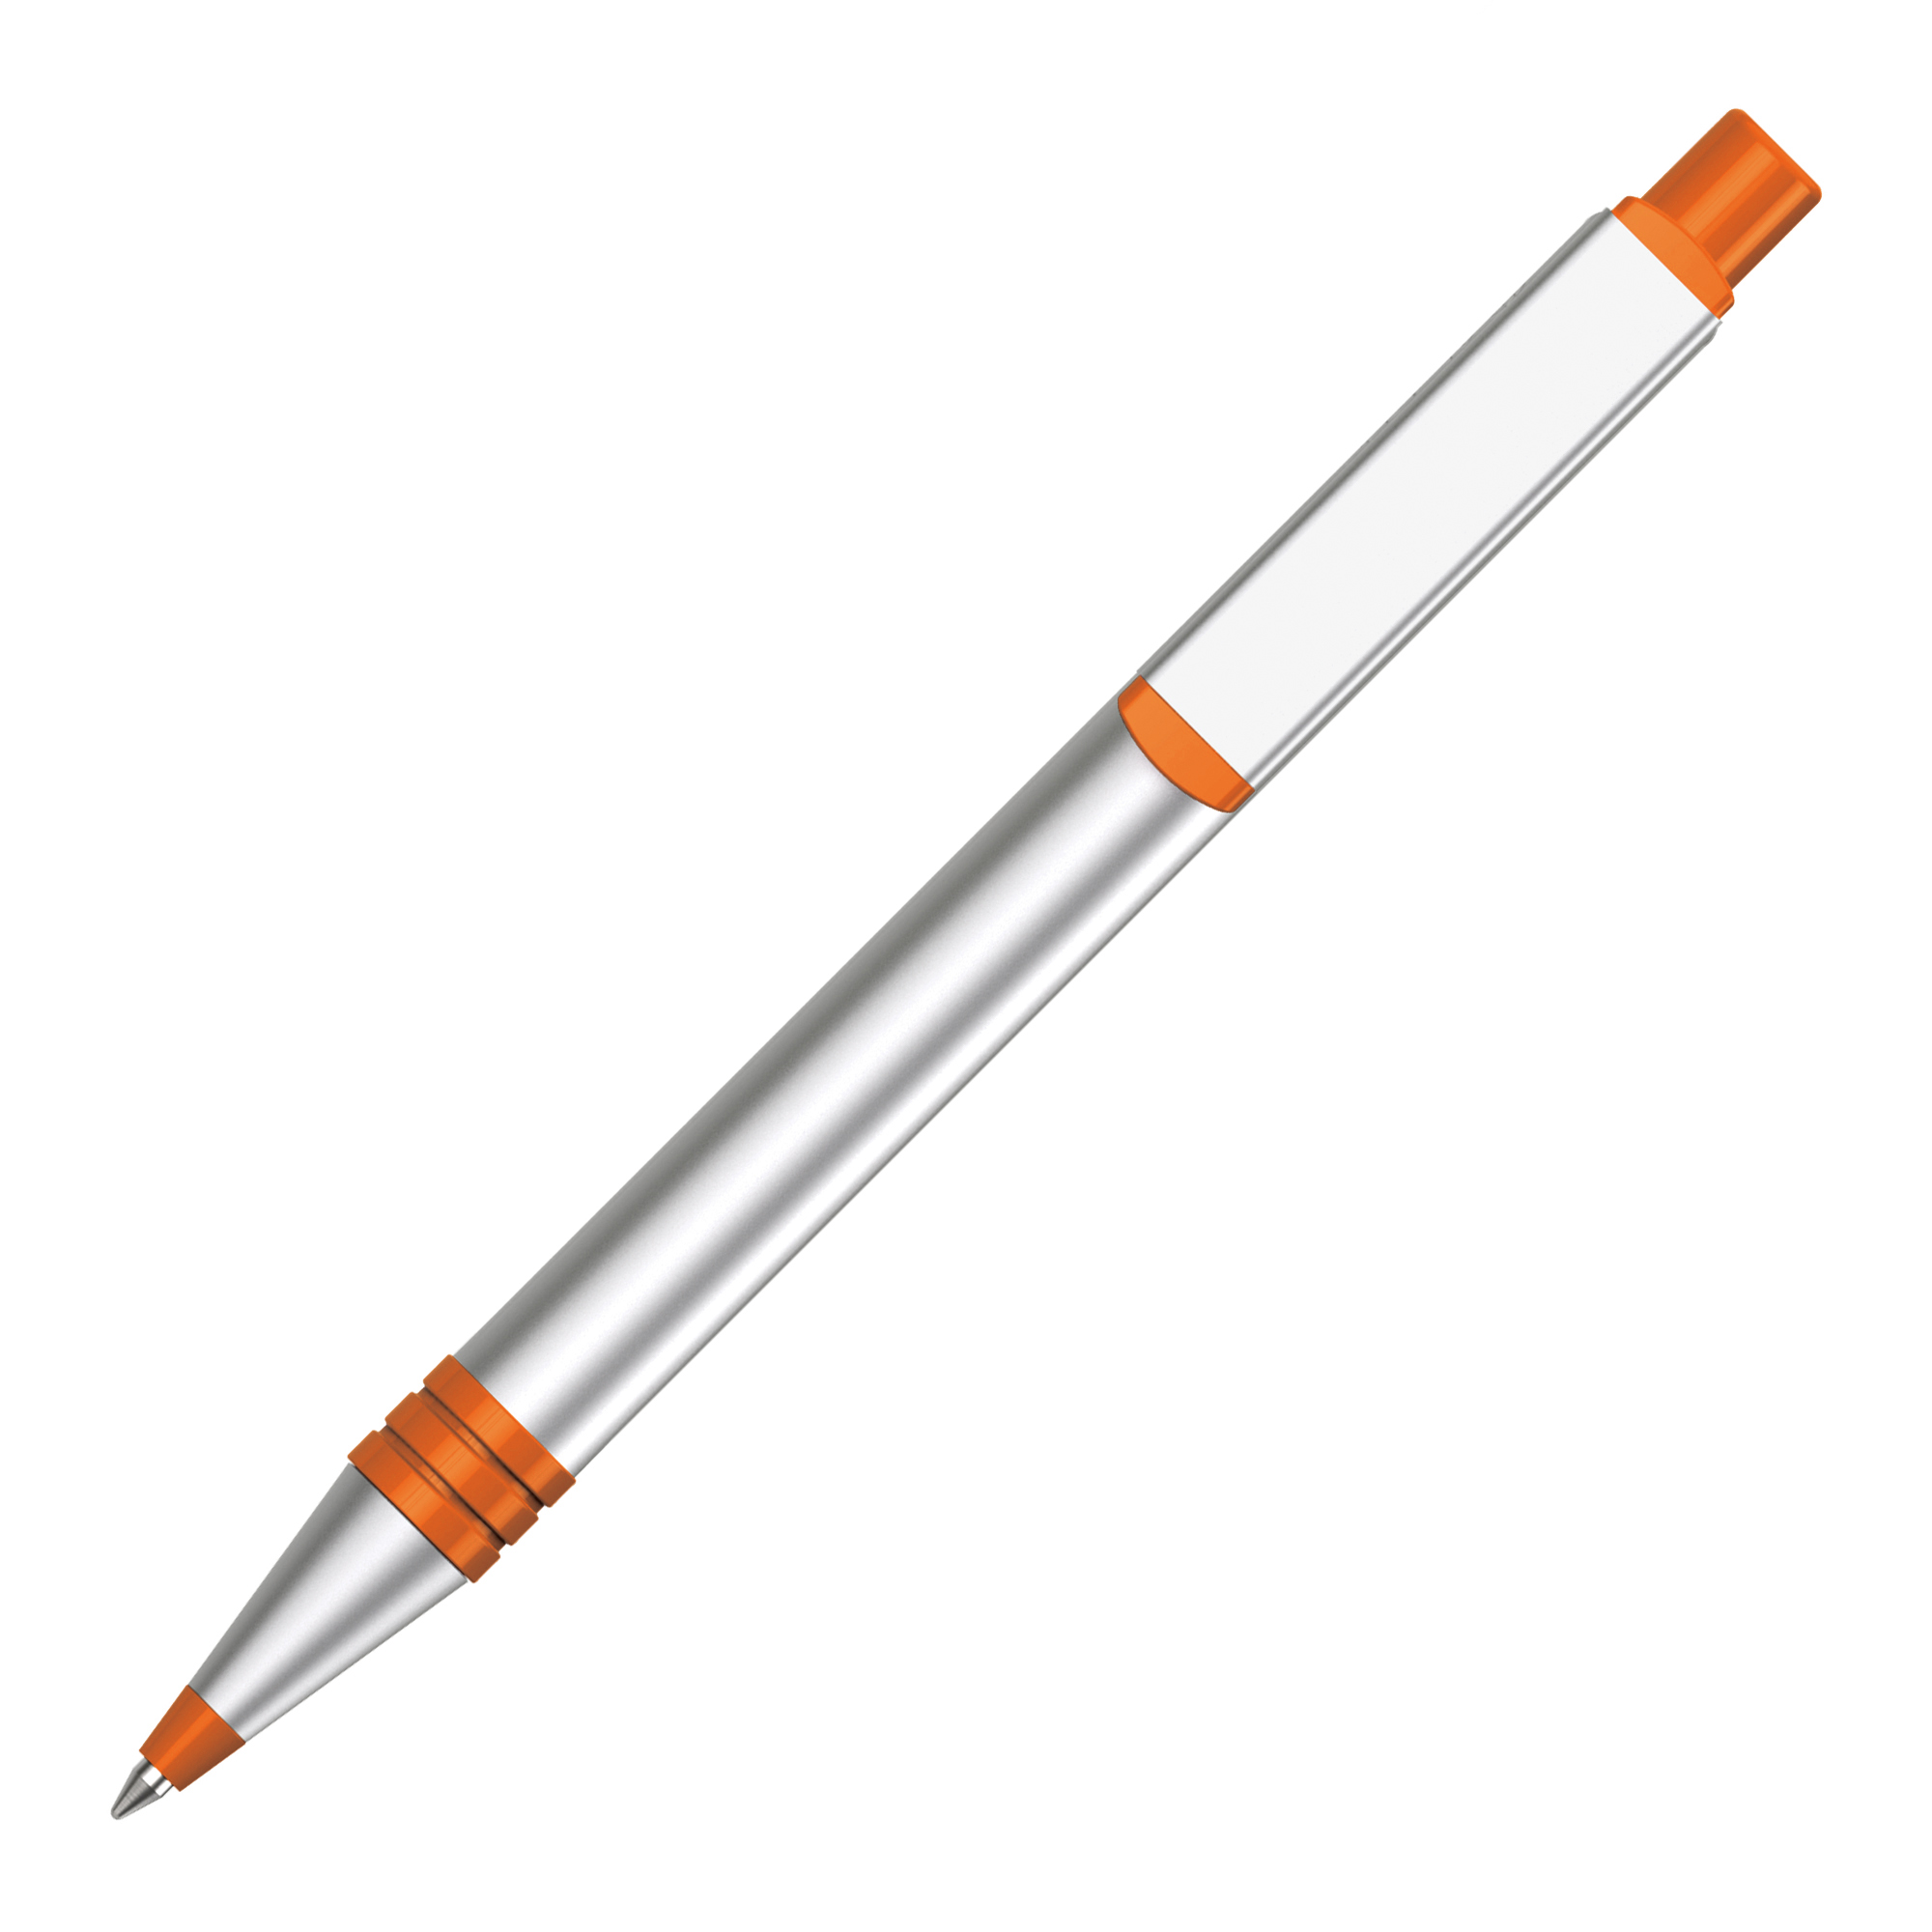 TPC841001AM - Hurst Mechanical Pencil